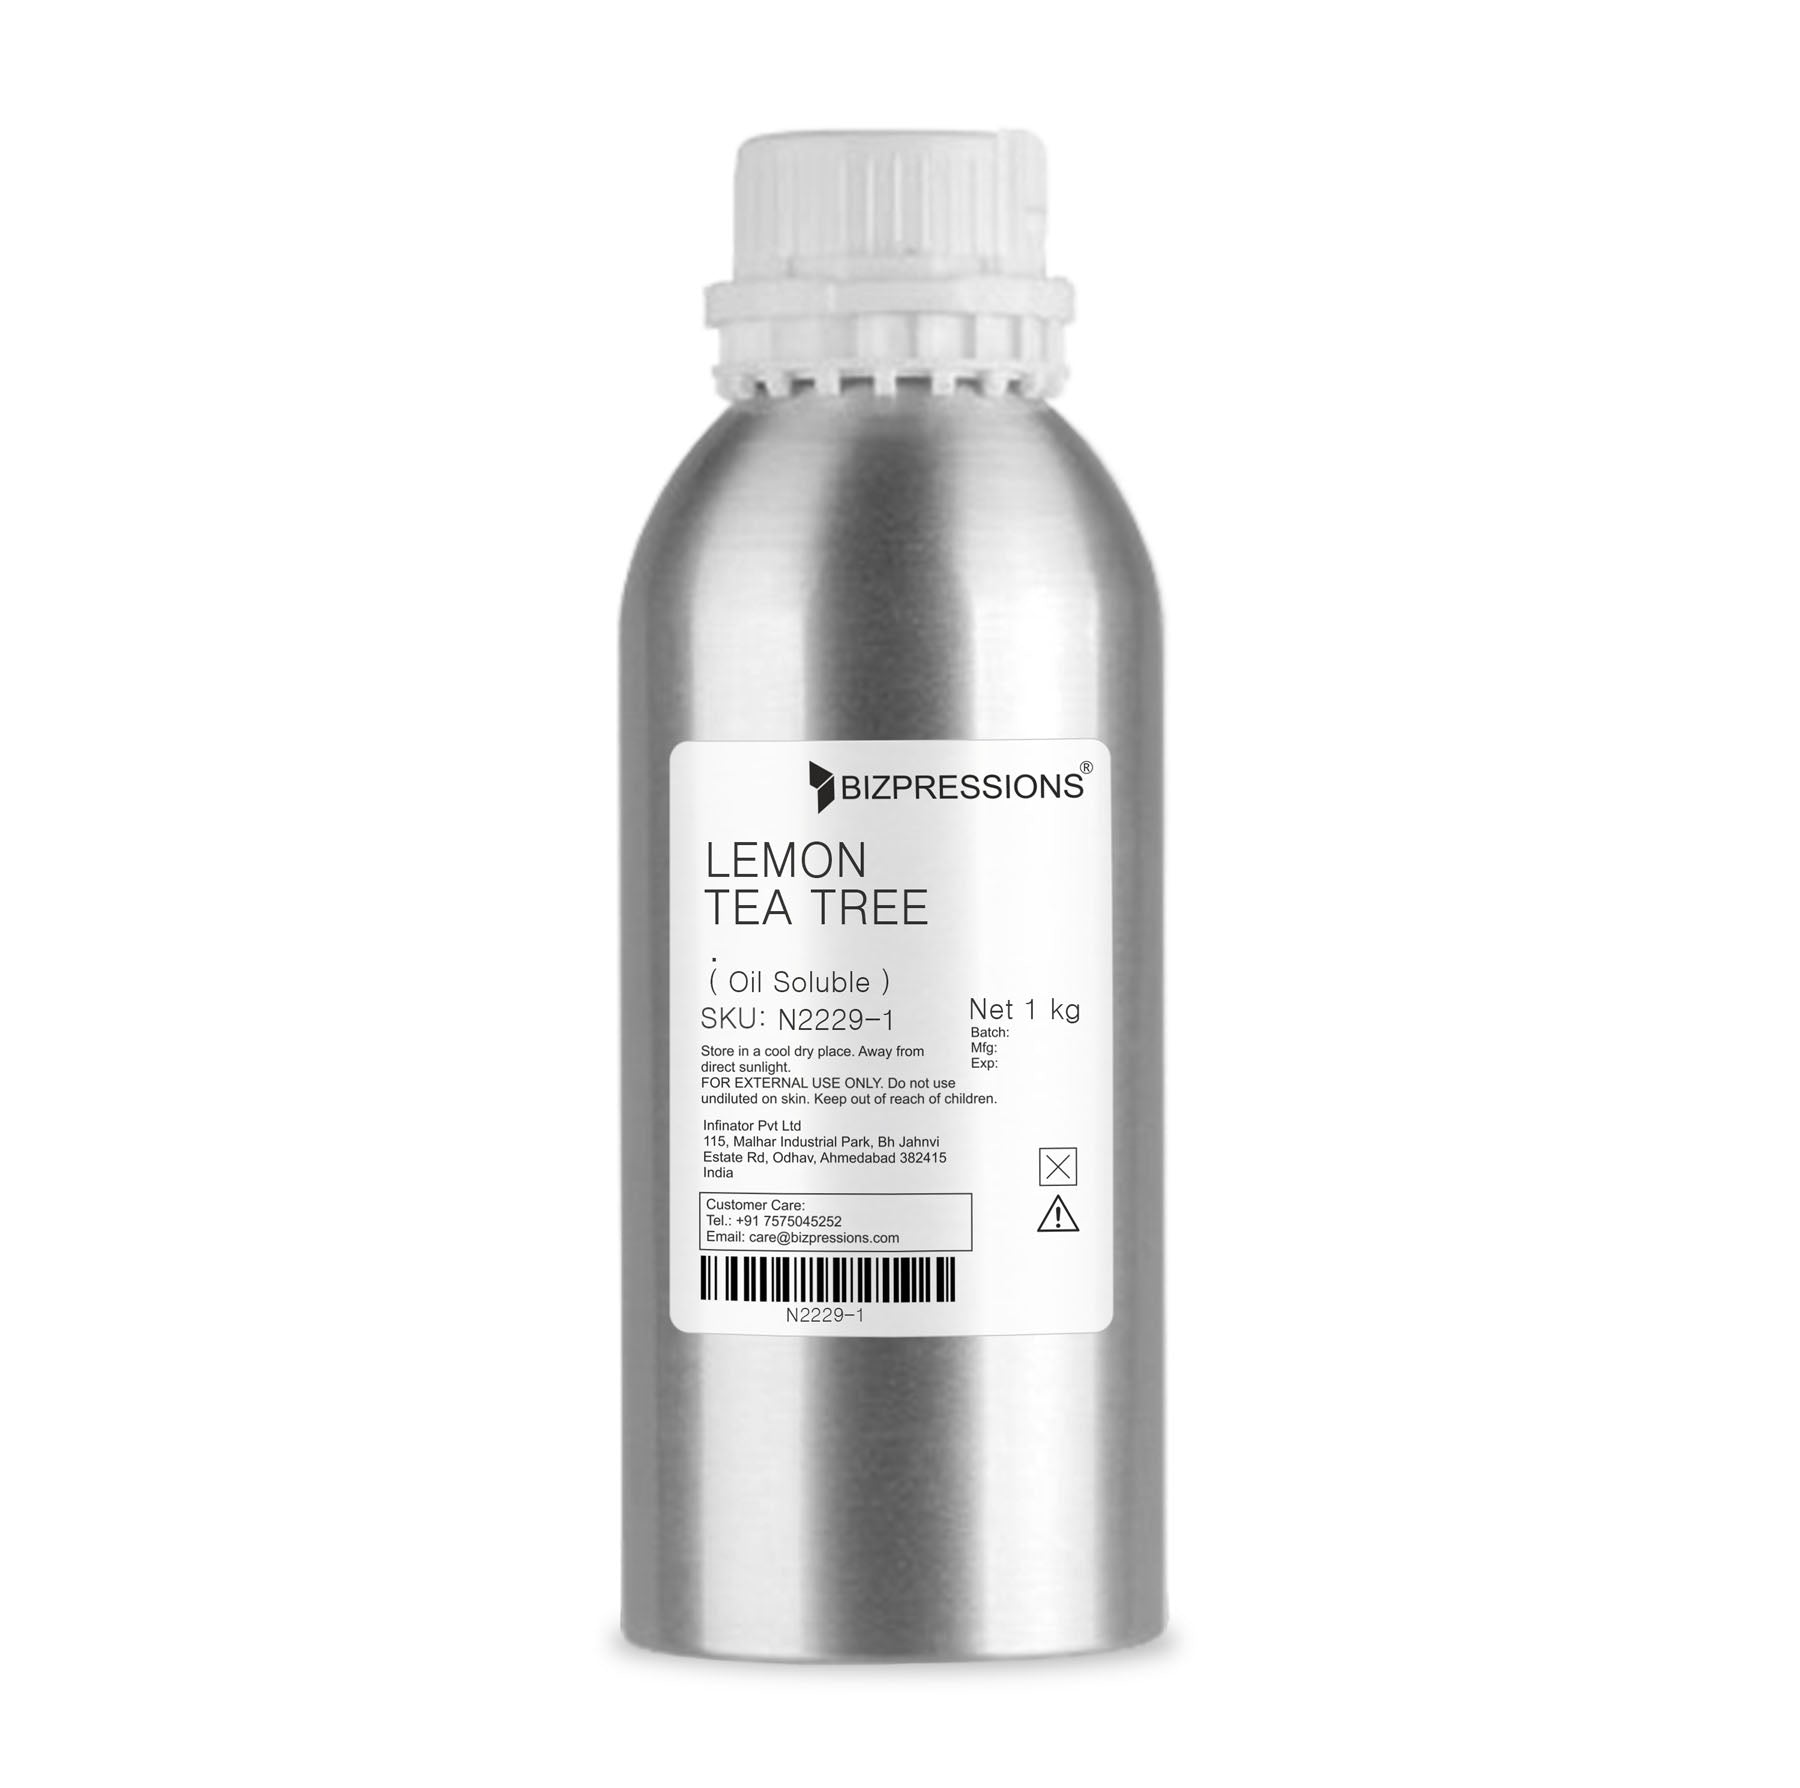 LEMON TEA TREE - Fragrance ( Oil Soluble ) - 1 kg